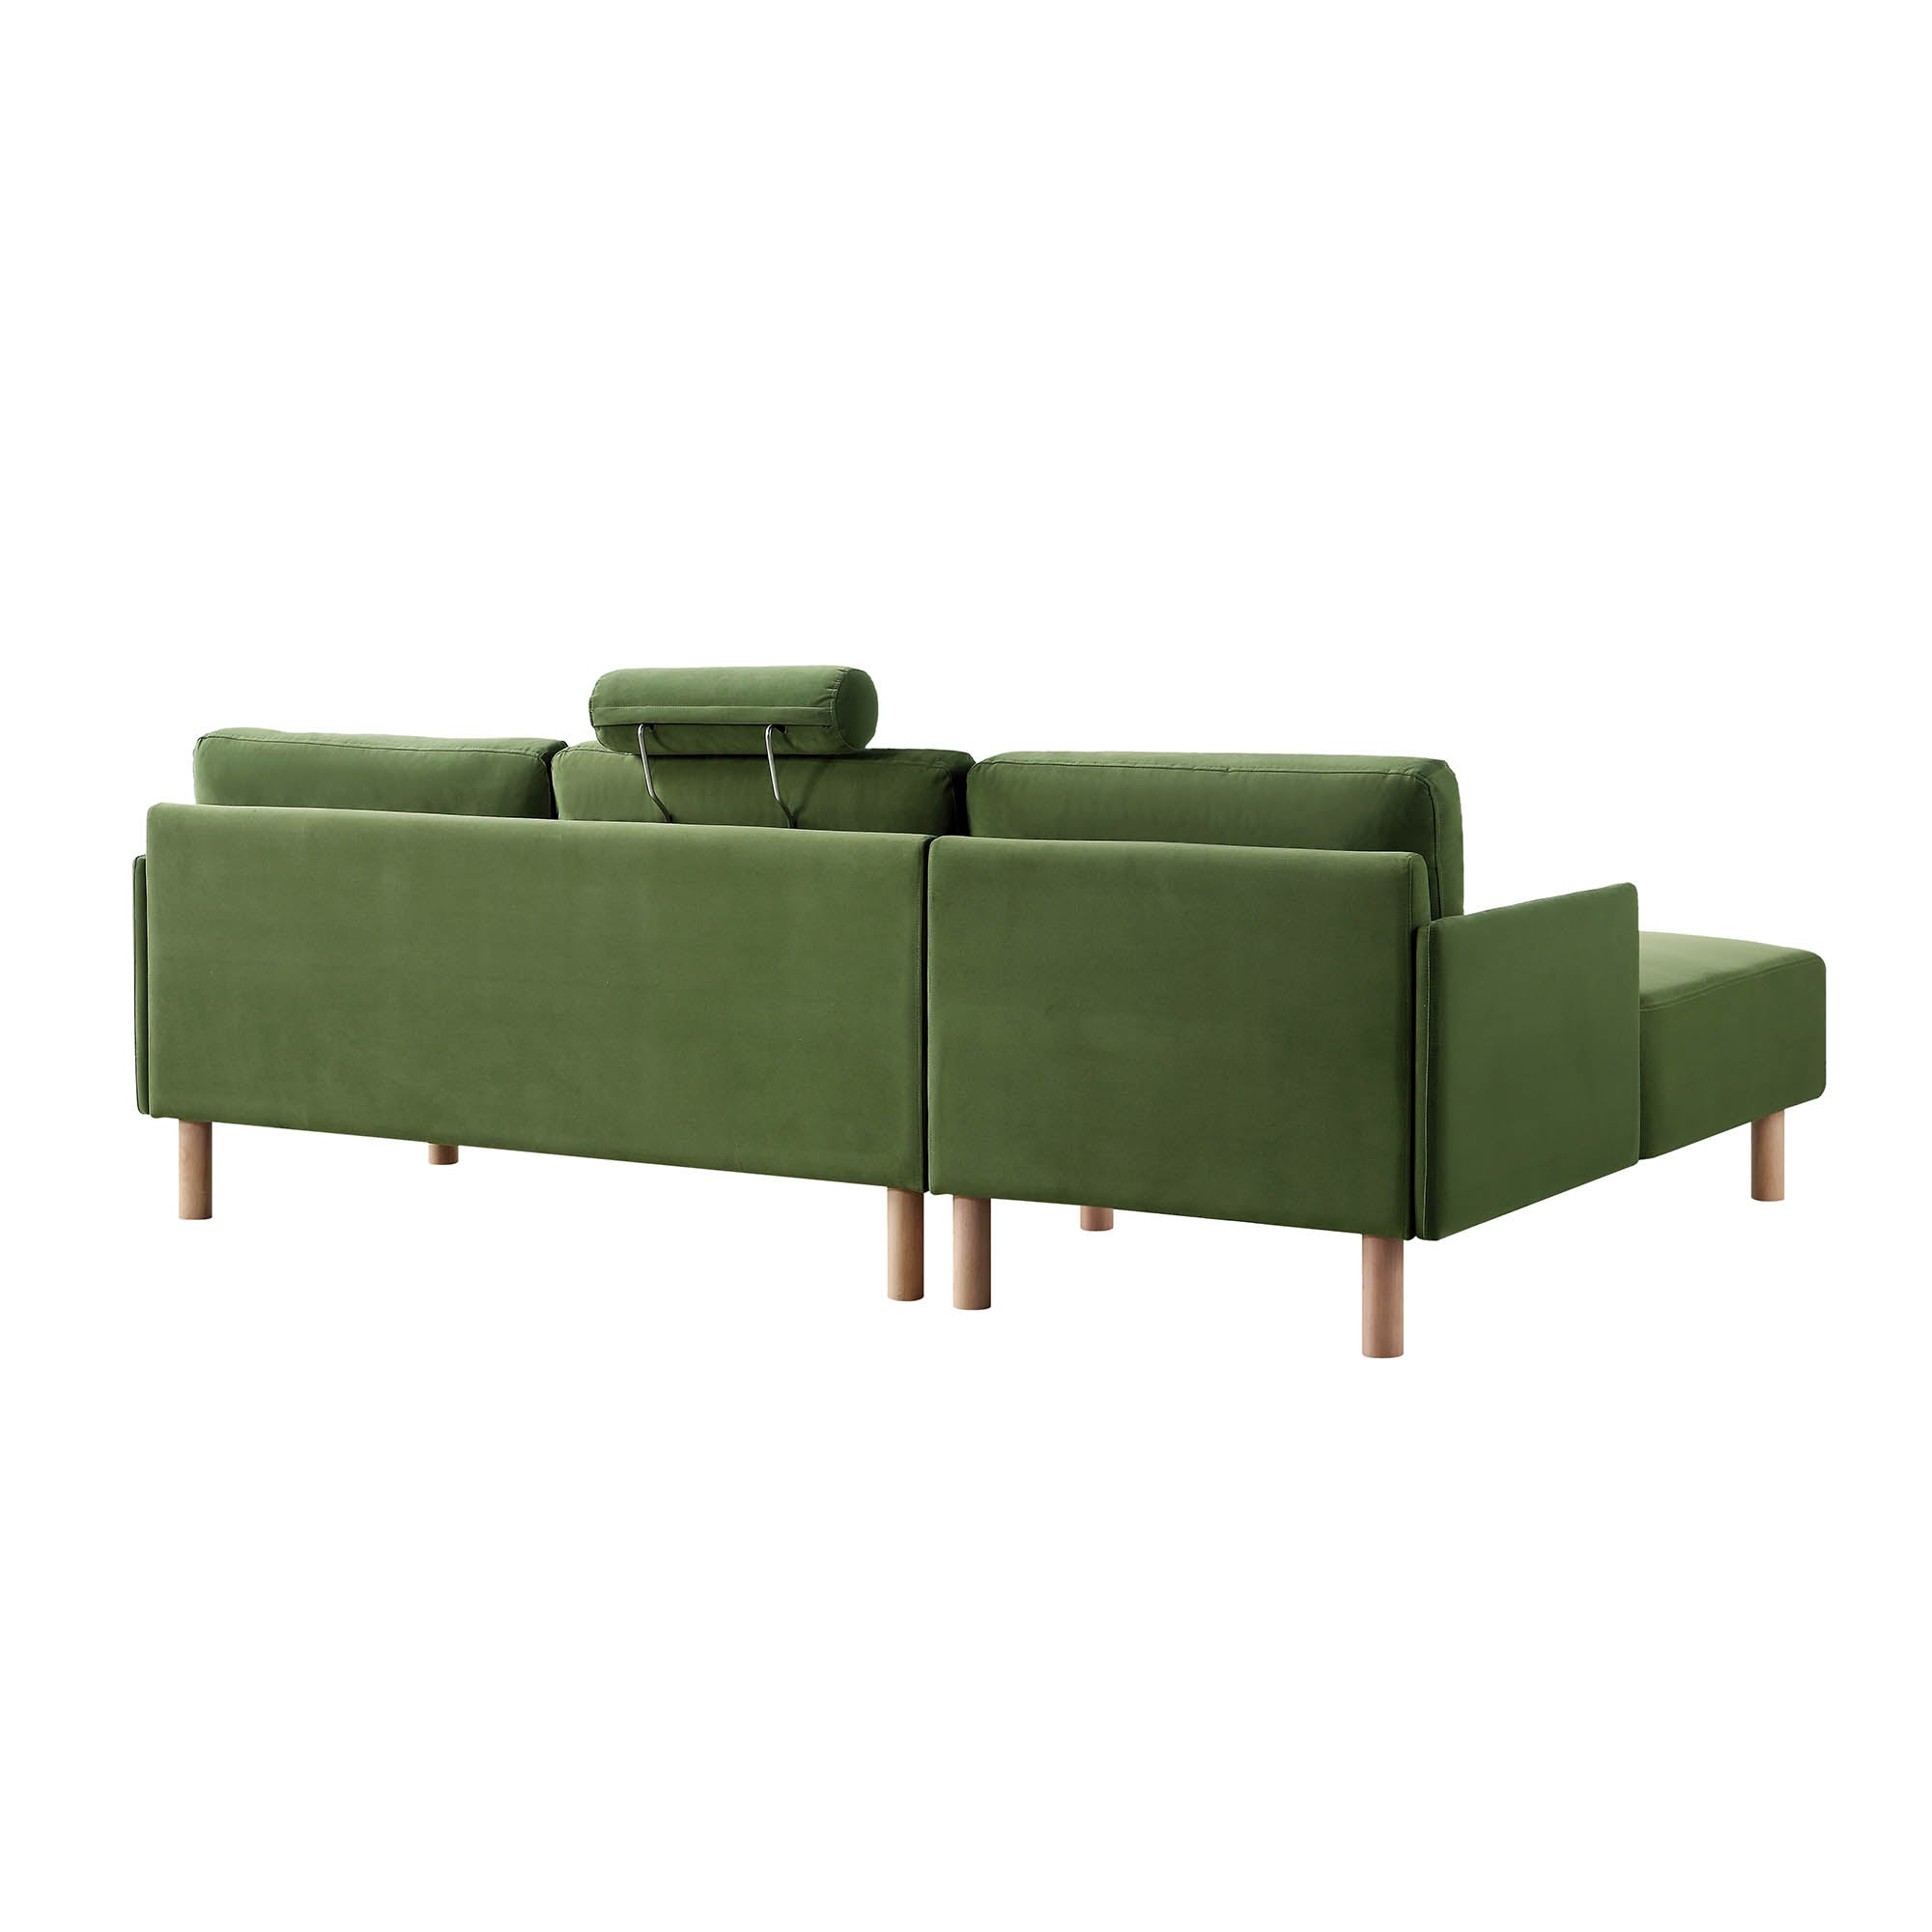 Timber Fern Green Velvet Sofa, Large 3-Seater Chaise Sofa Left Hand